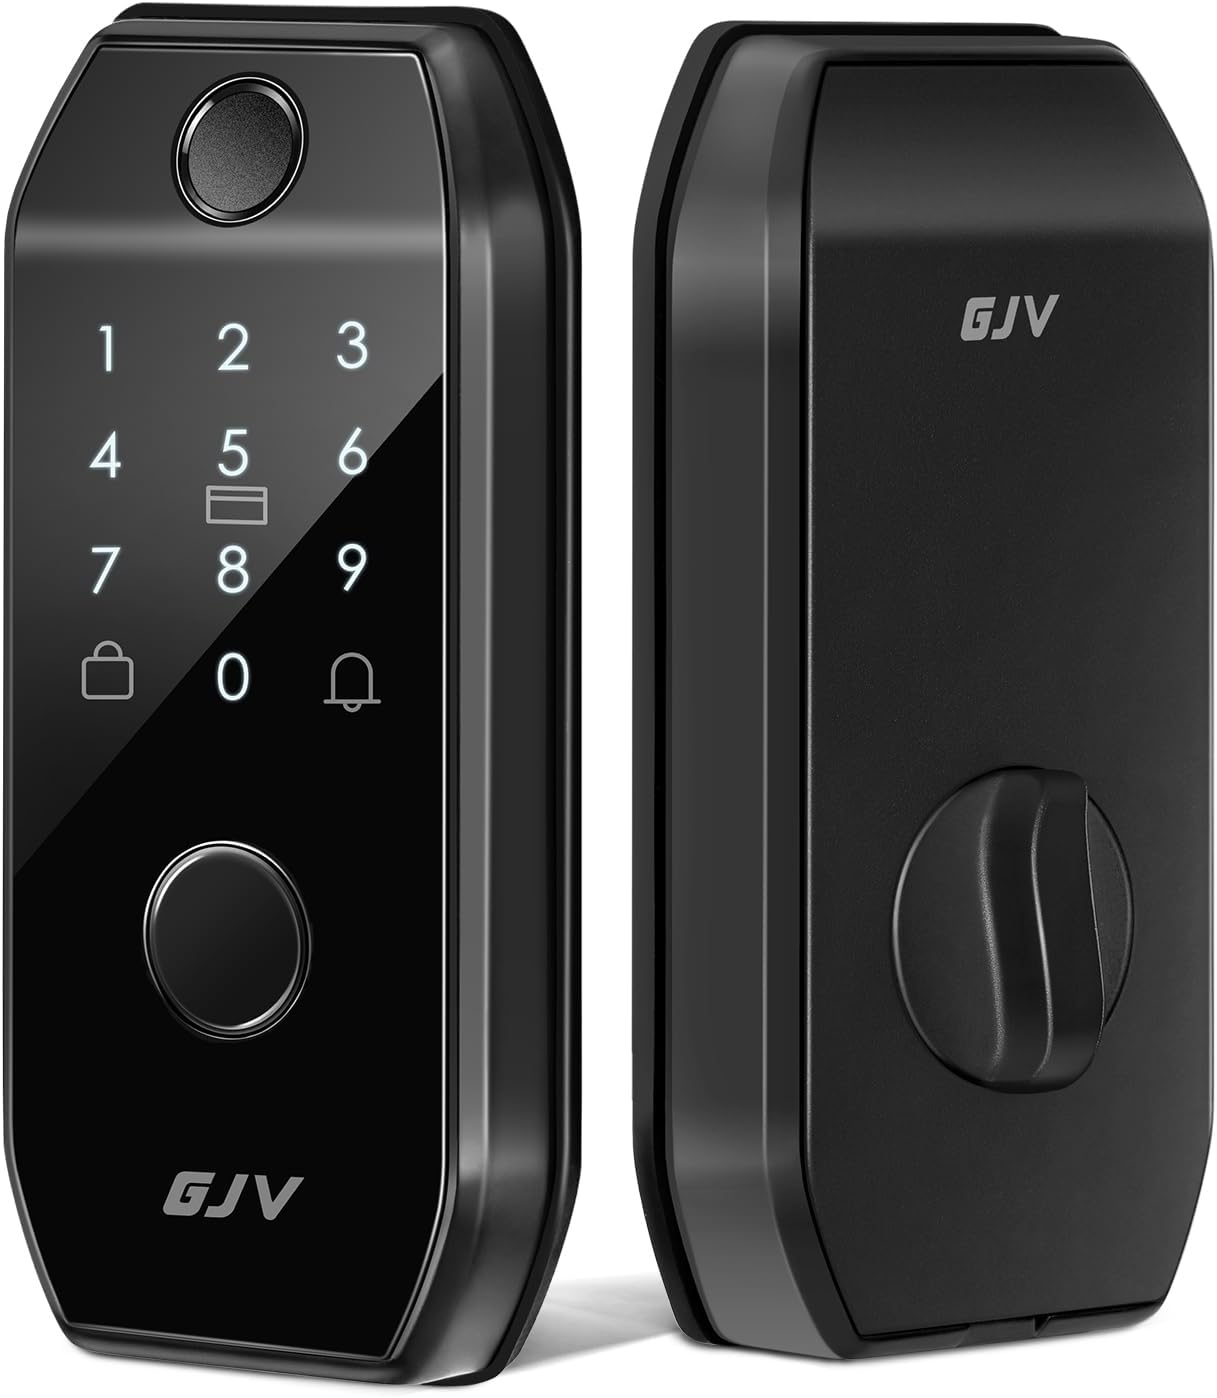 GJV Smart Lock Review: Keyless Entry Made Easy